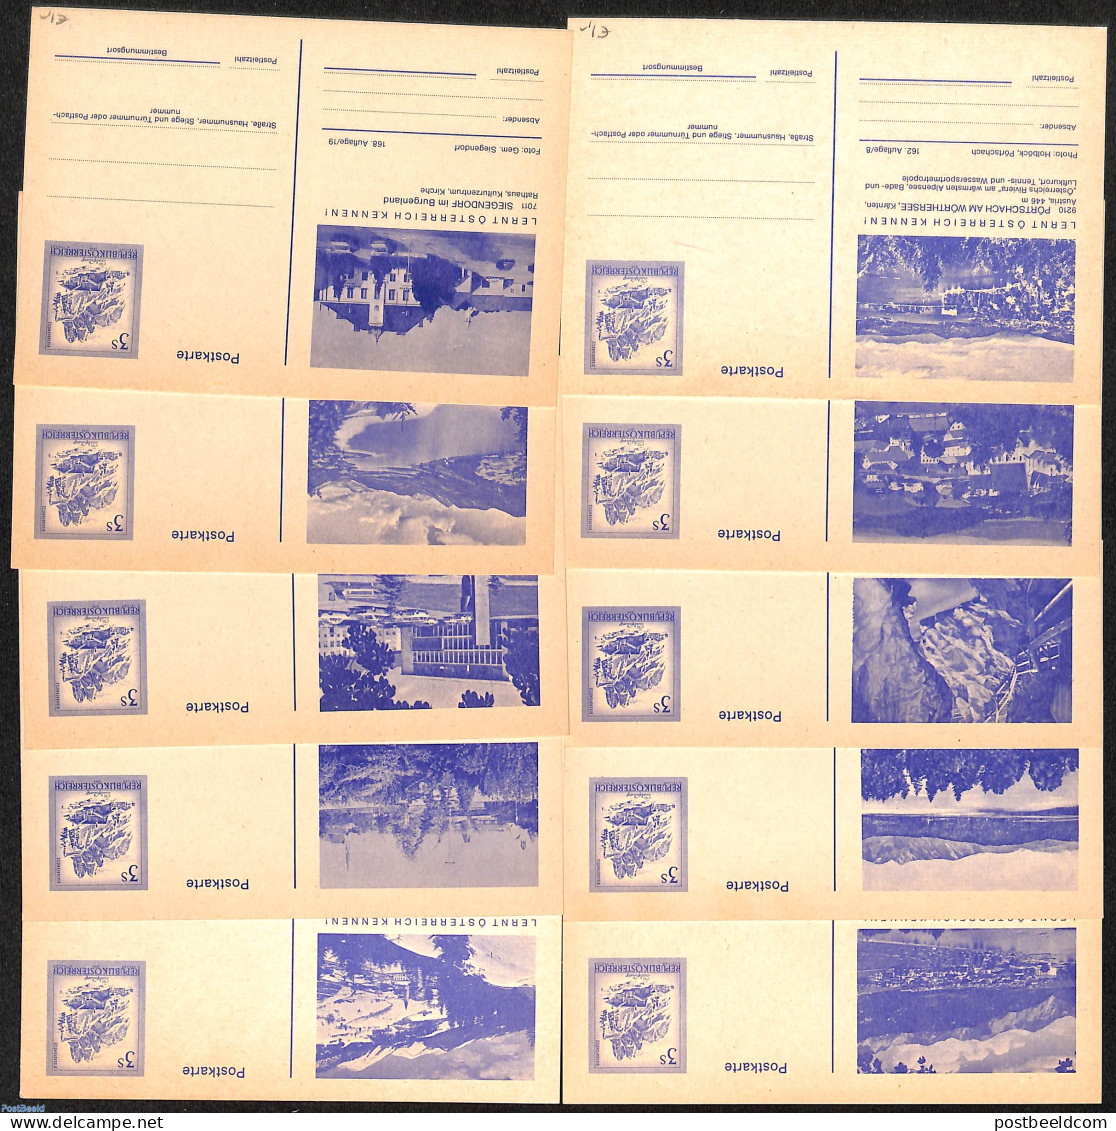 Austria 1978 10 Illustrated Postcards, Unused Postal Stationary - Covers & Documents